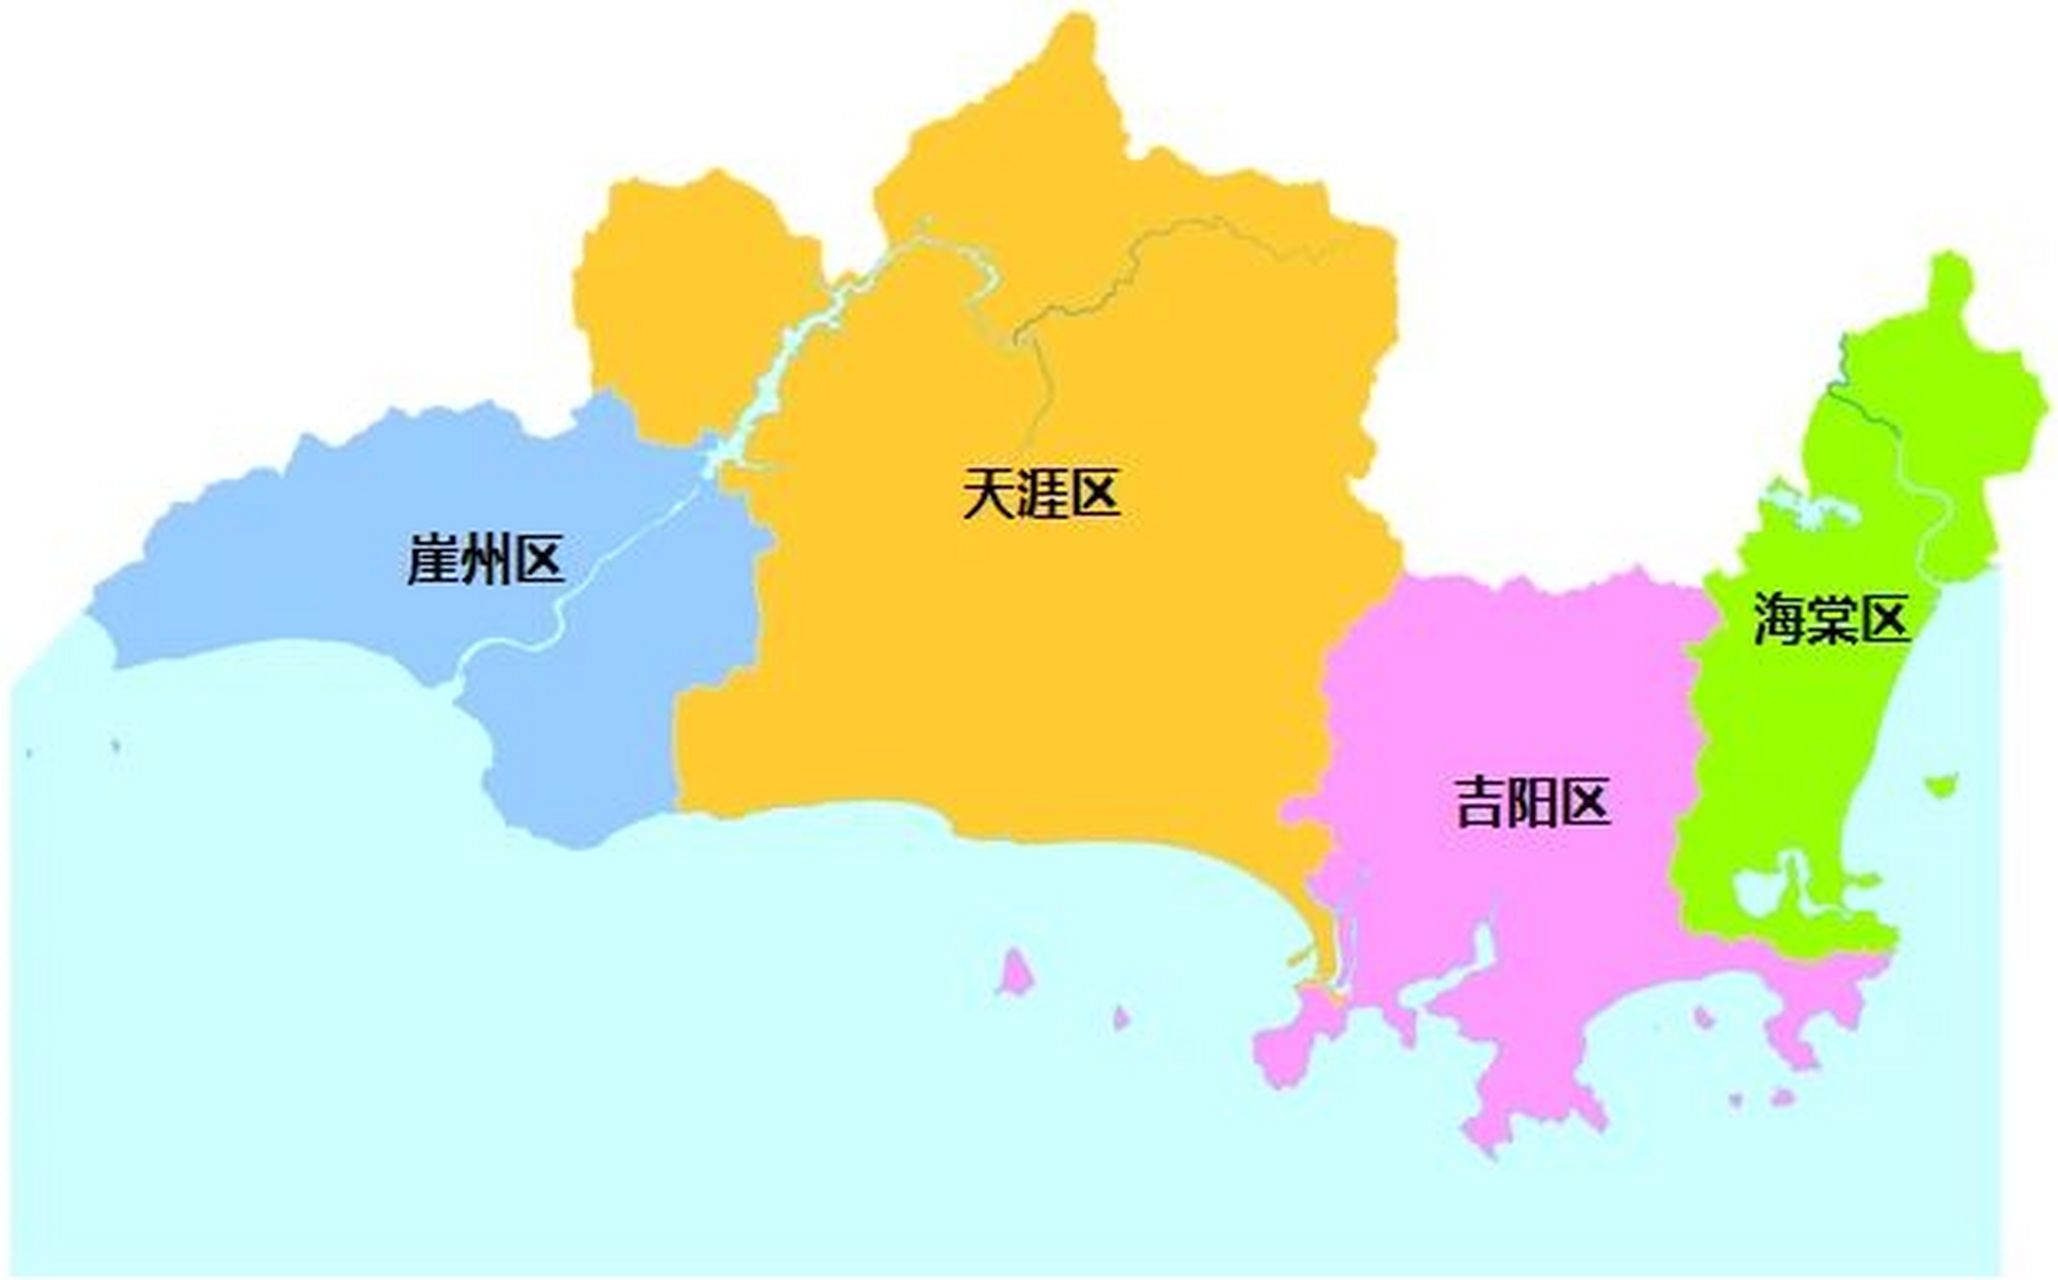 海口三亚行政区划 海口市,海南省省会,总面积为3126